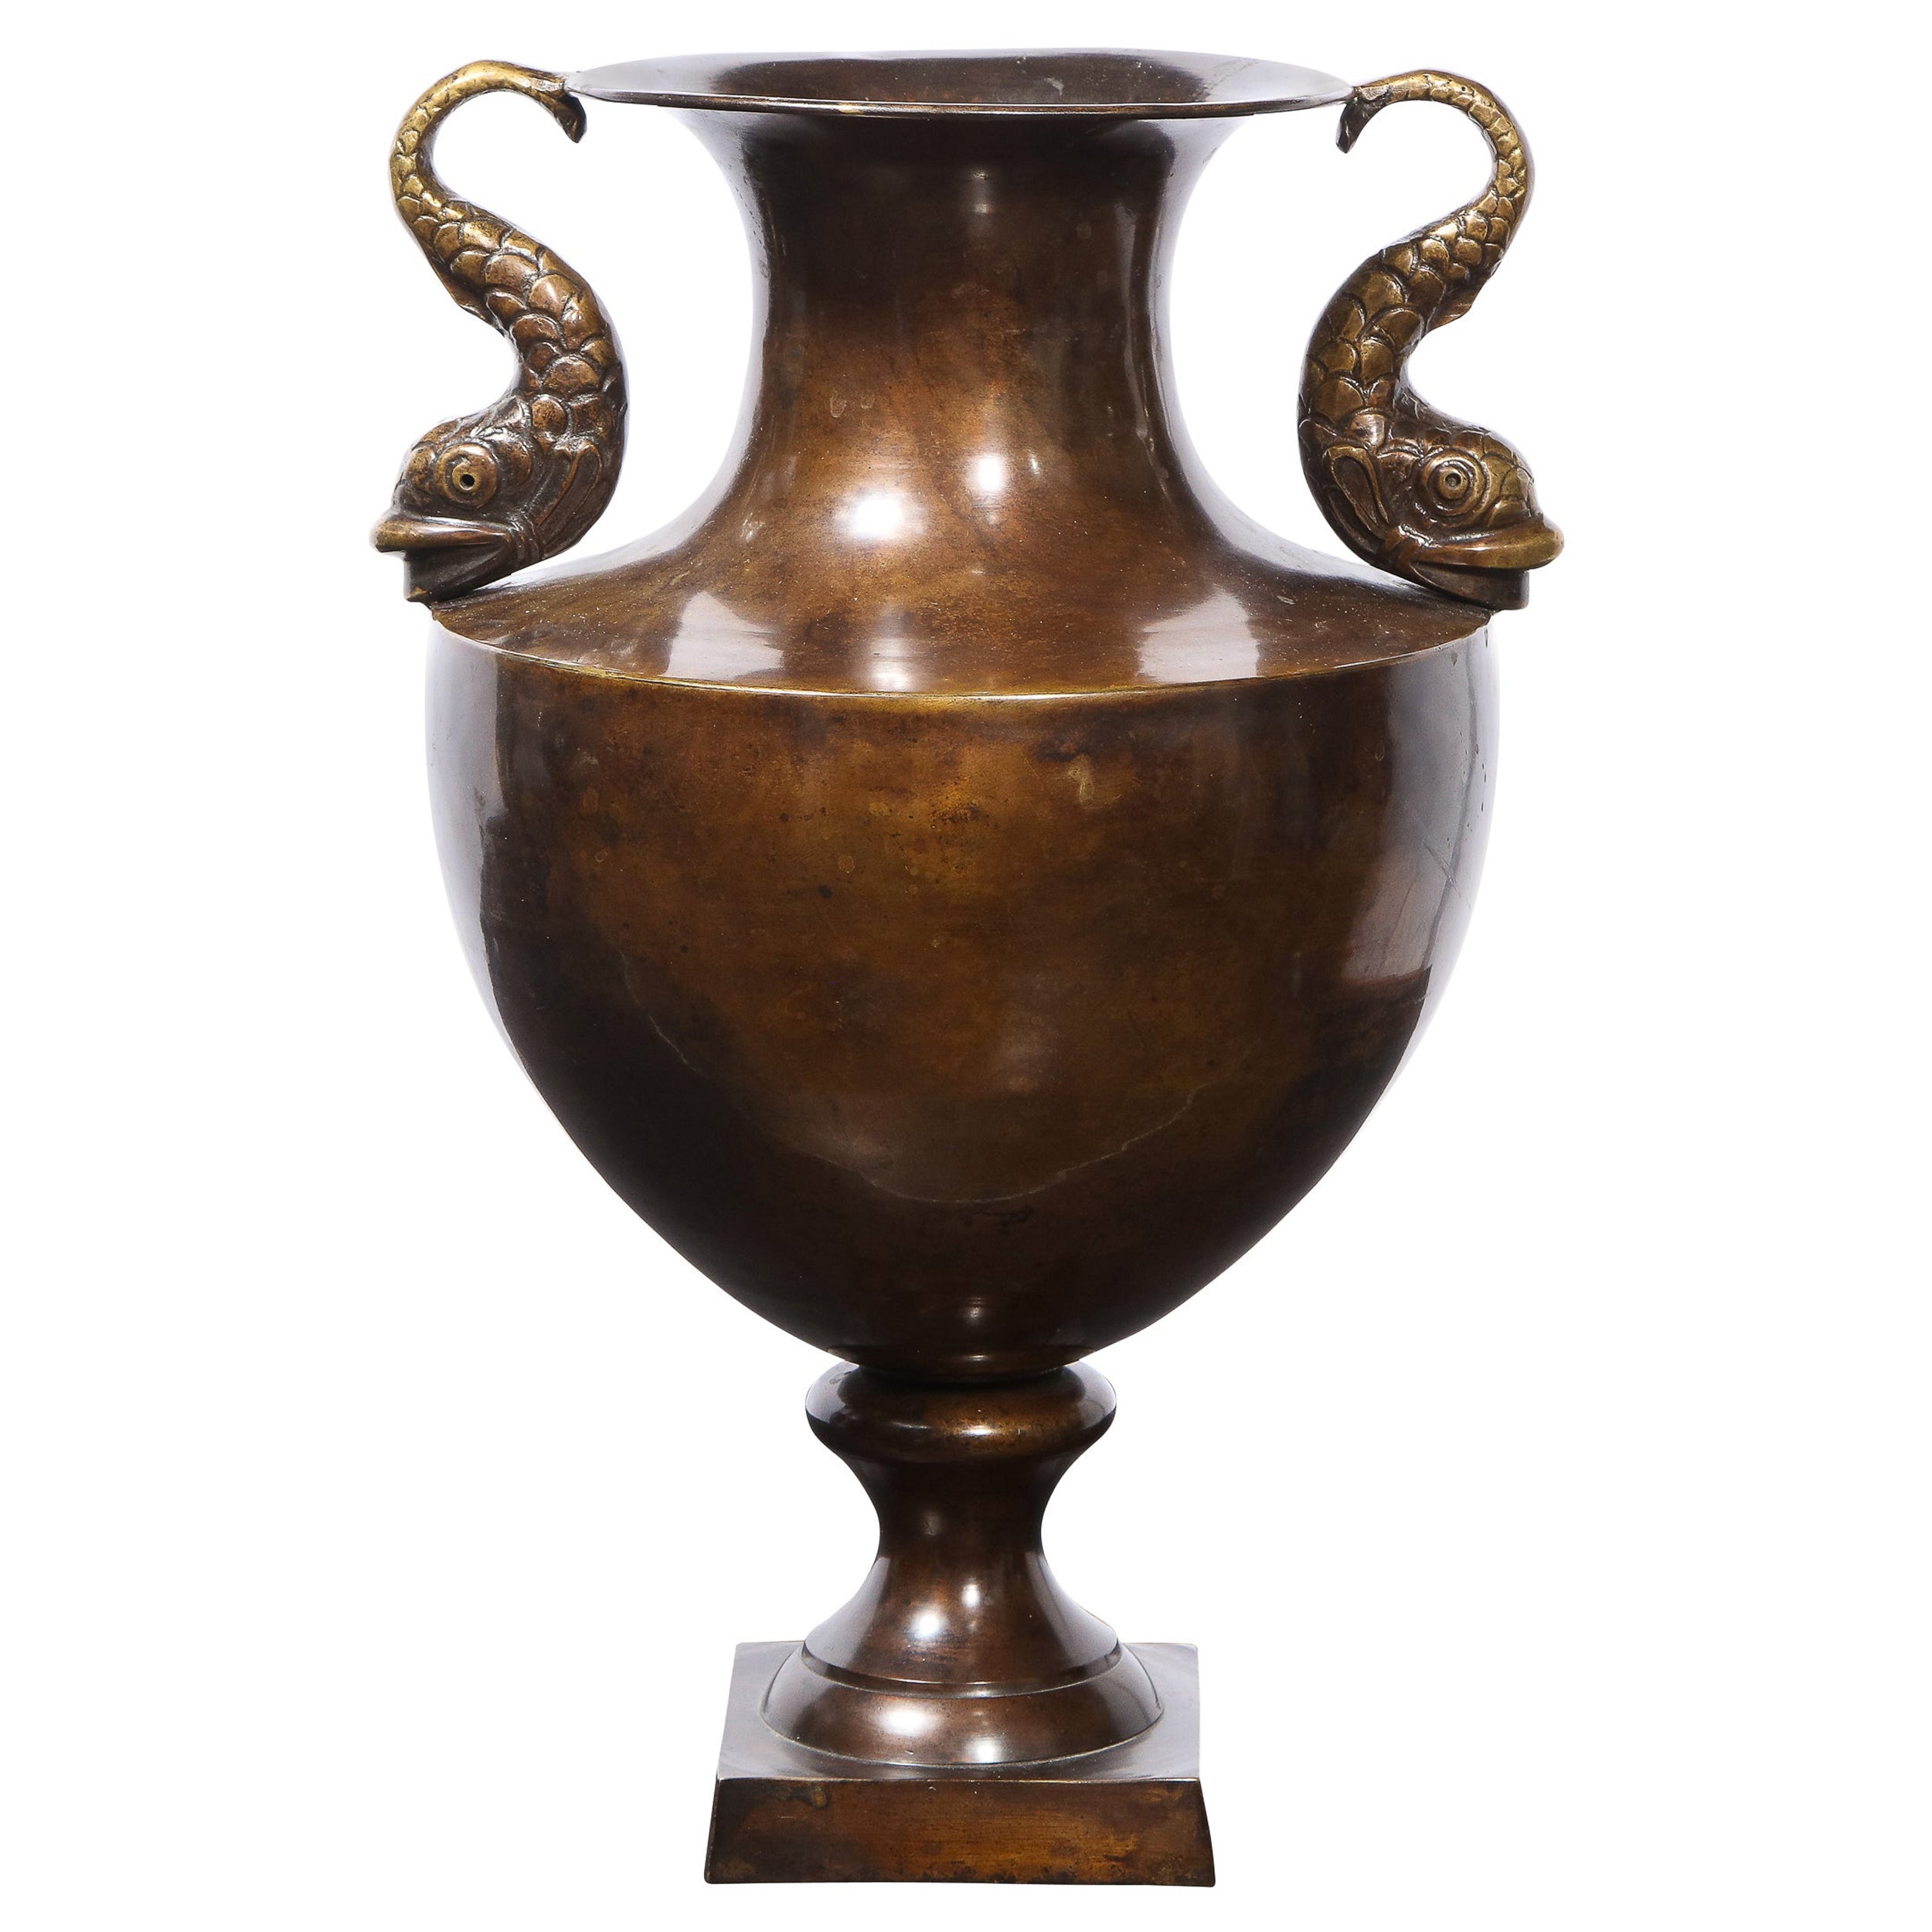 Klassische schwedische Vase in Urnenform aus Bronze des 19. Jahrhunderts mit Delphinengriffen im Meereslederstil